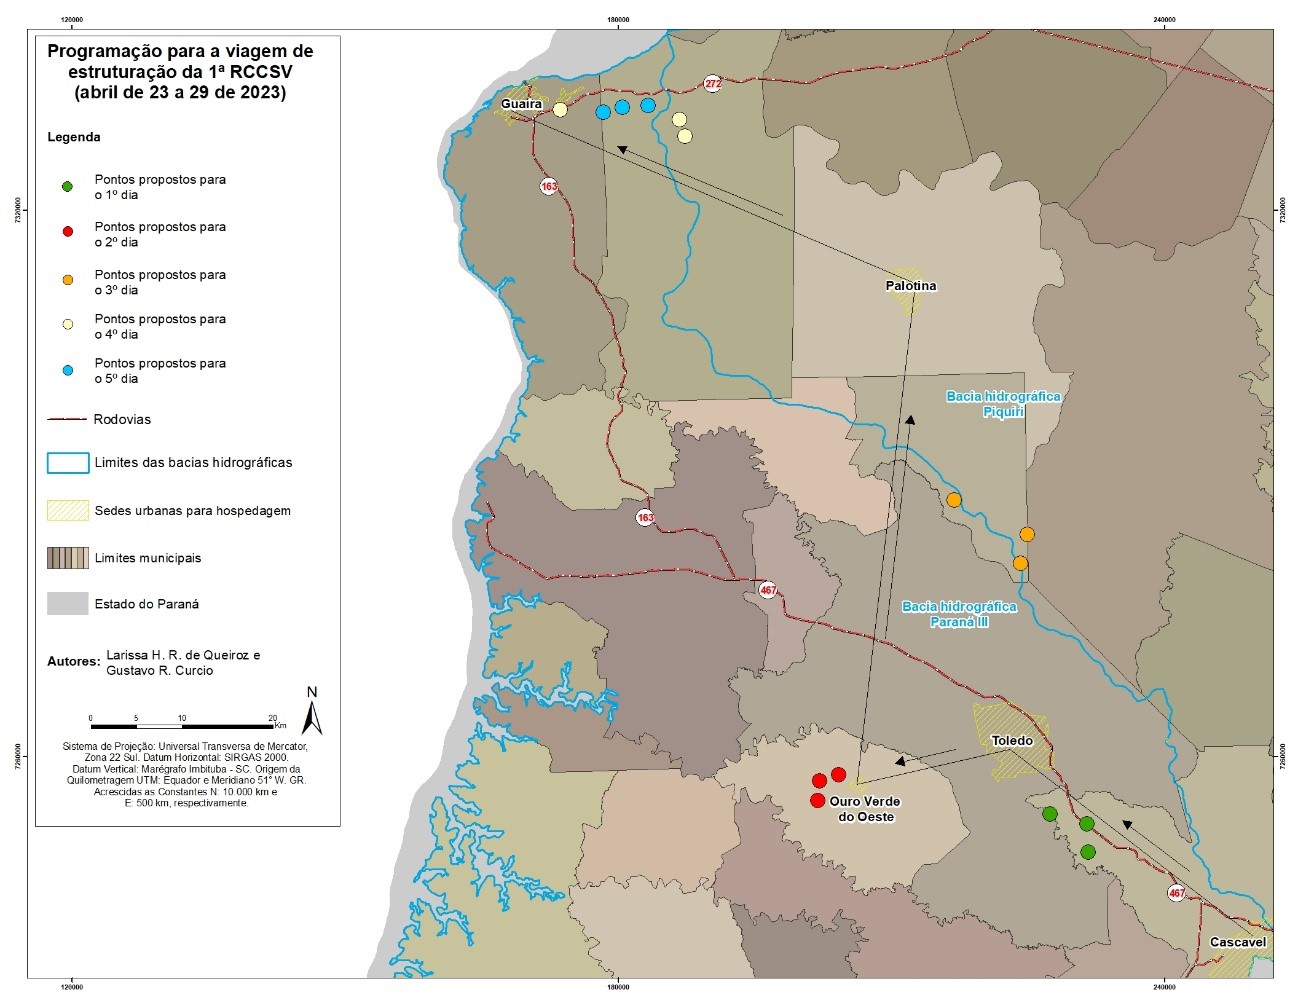 Figura 2 - Itinerário da viagem de estruturação da 1a RCCSV no Estado do Paraná.